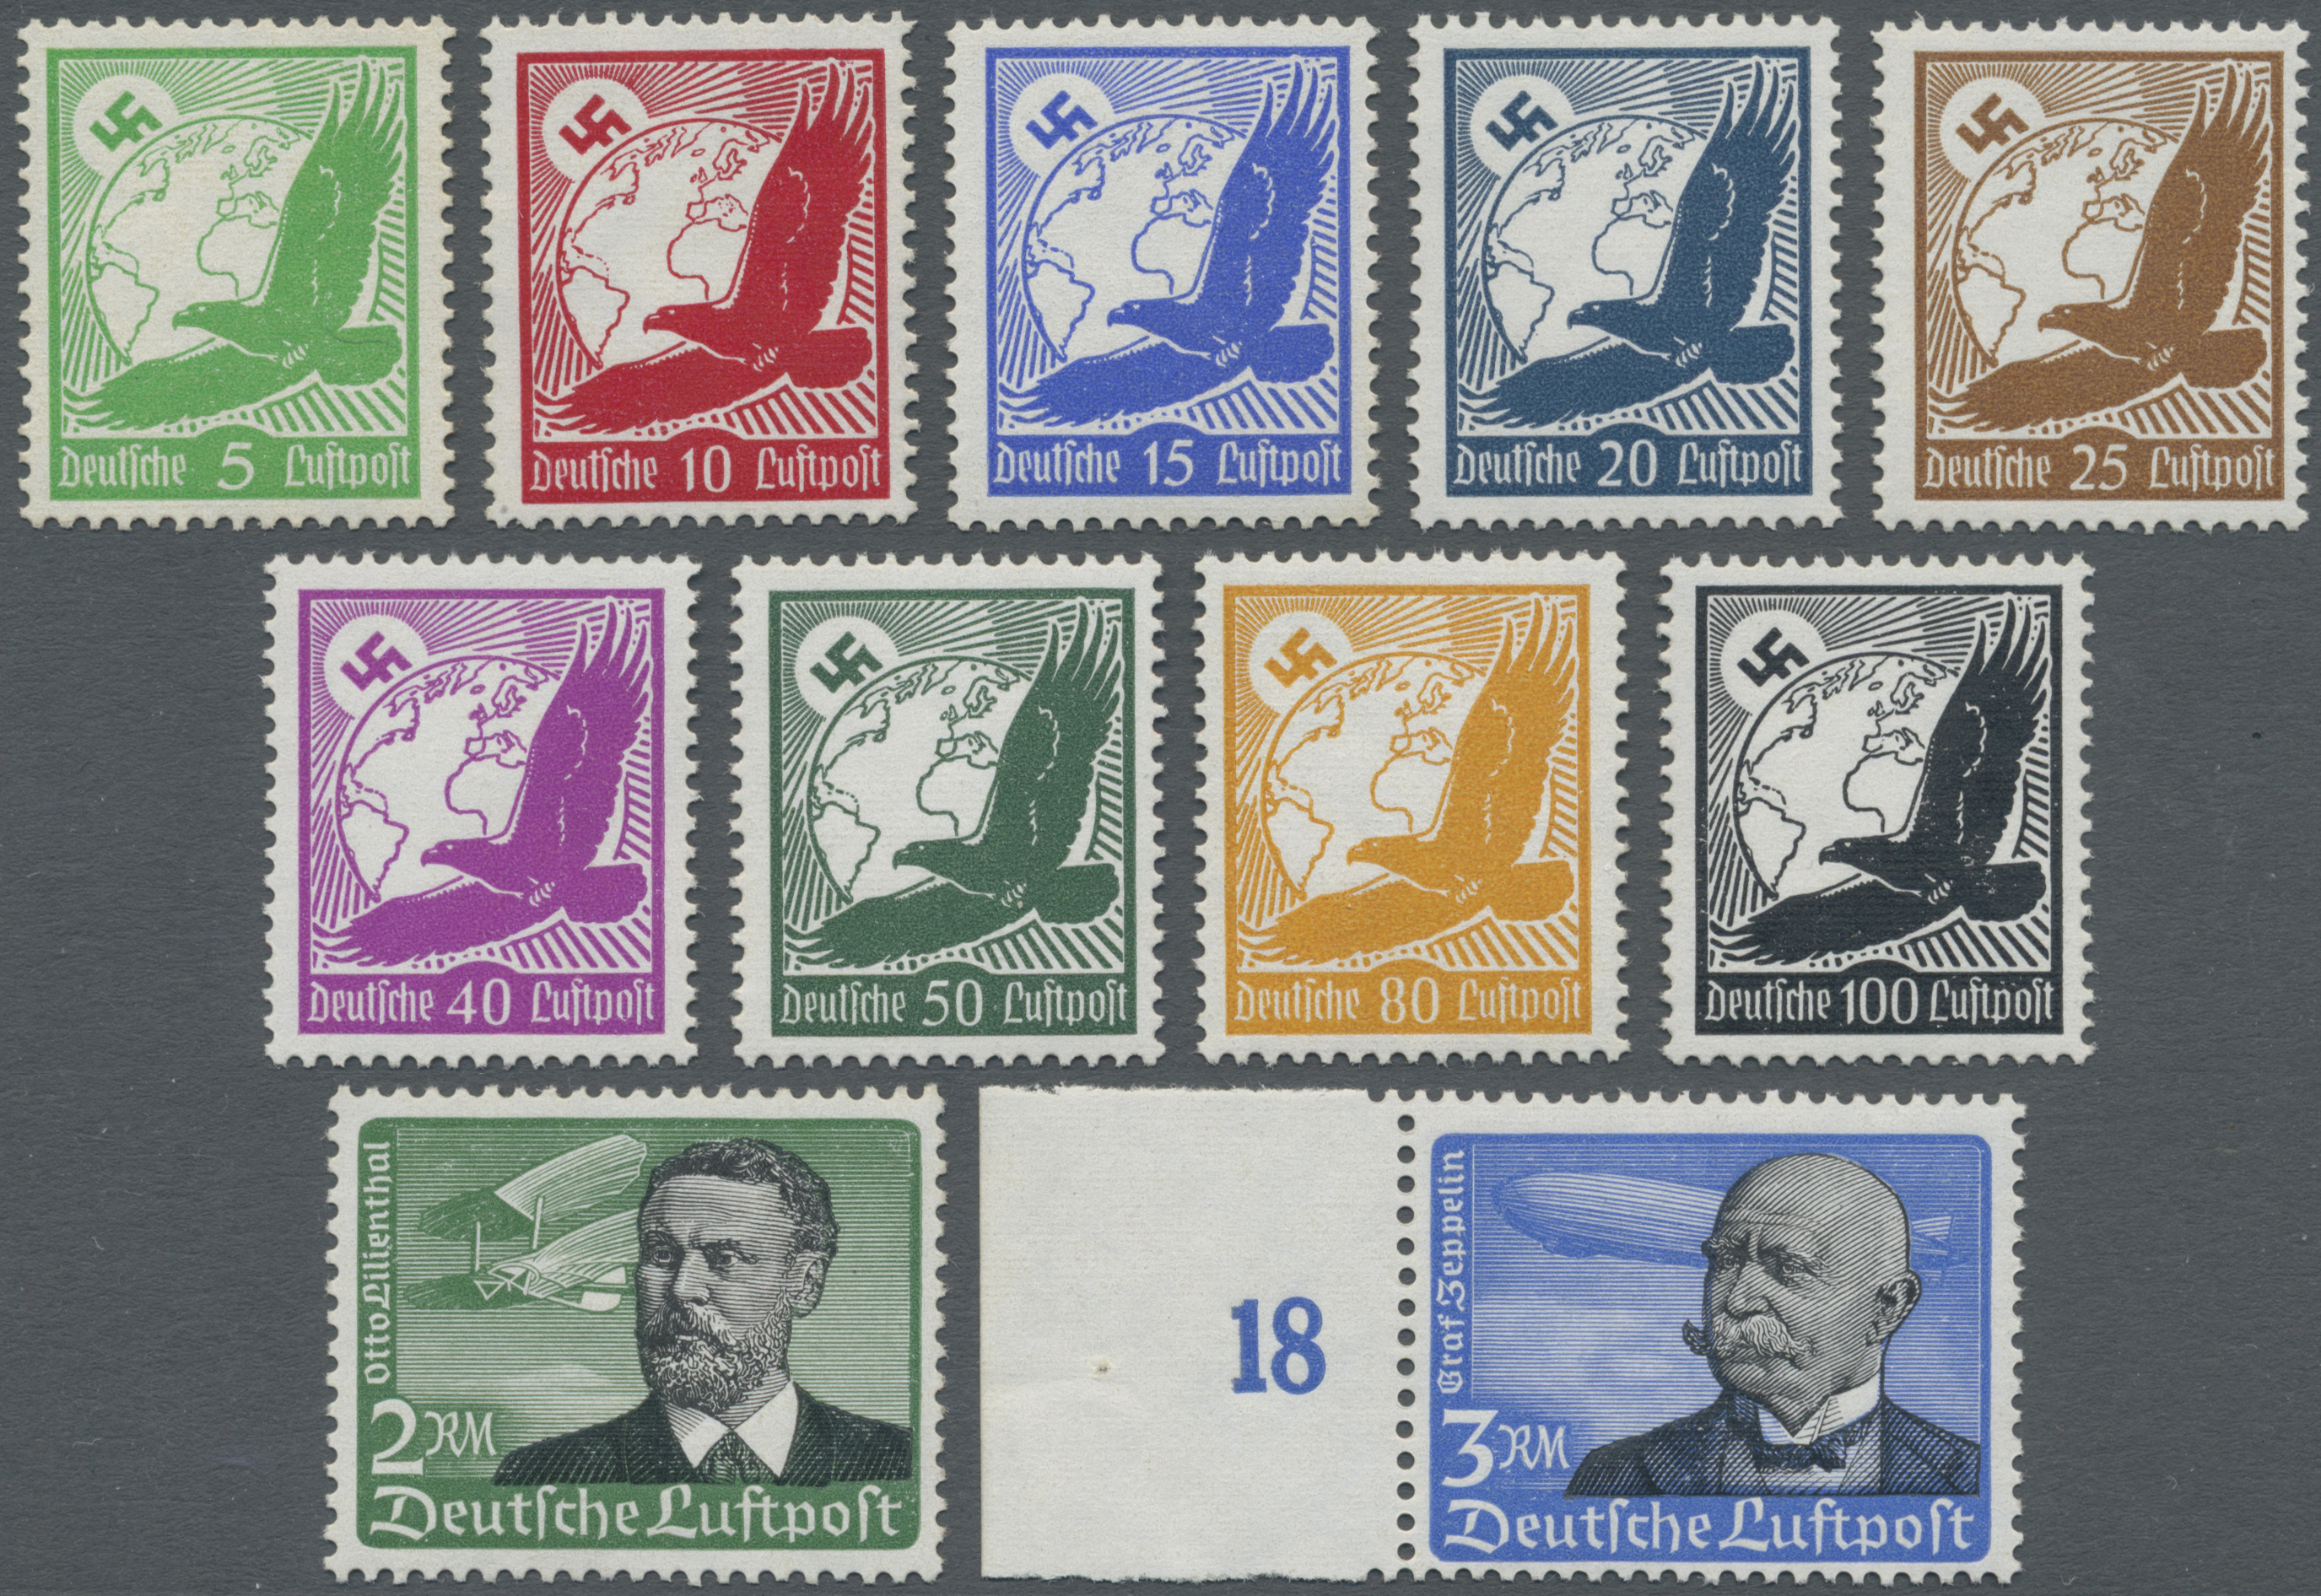 Stamp Auction - Deutsches Reich - 3. Reich - Single lots Germany ...